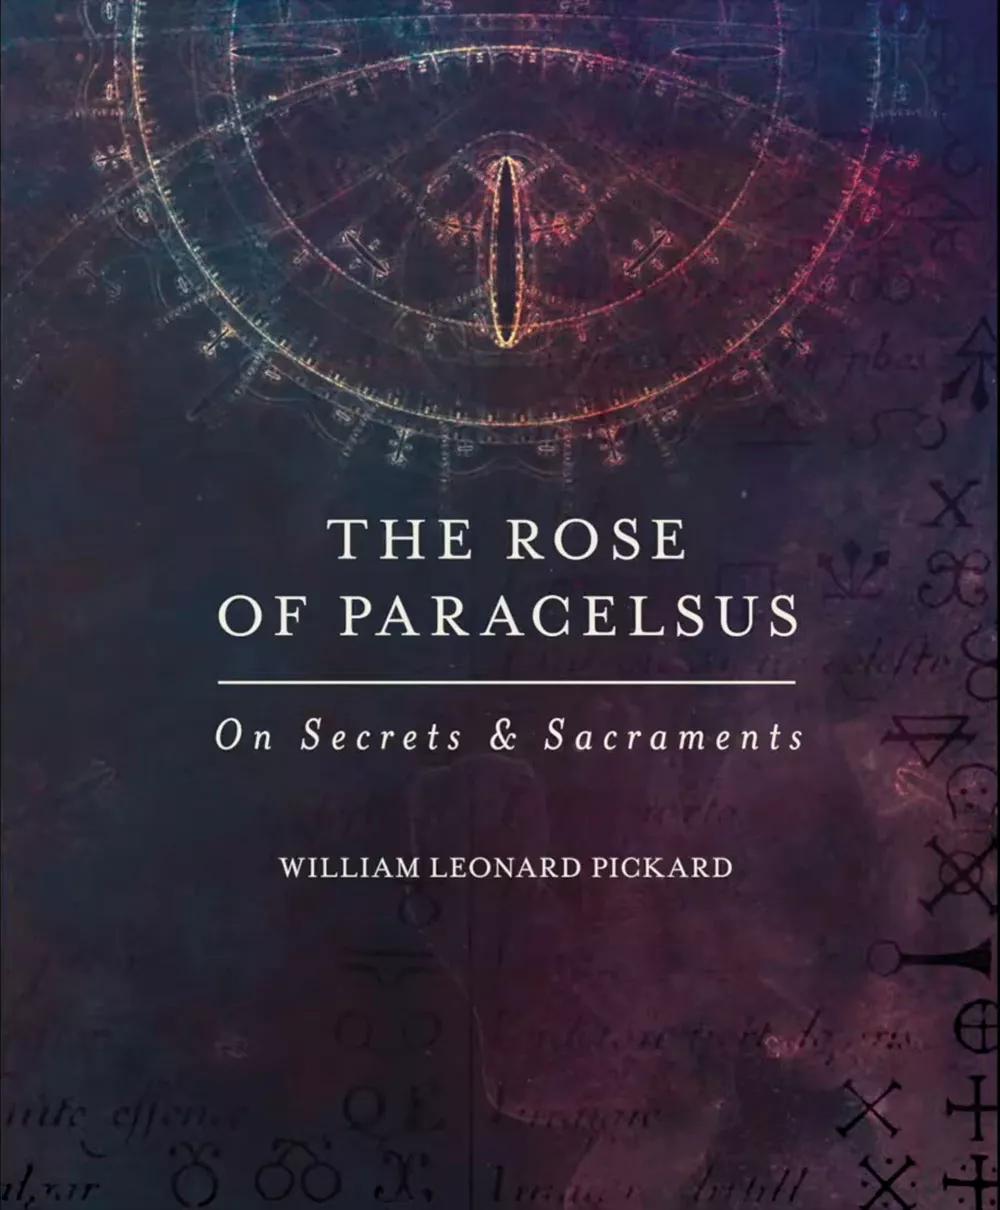 Portada de su libro,  La rosa de Paracelso. Sobre secretos y sacramentos, publicado en 2015.